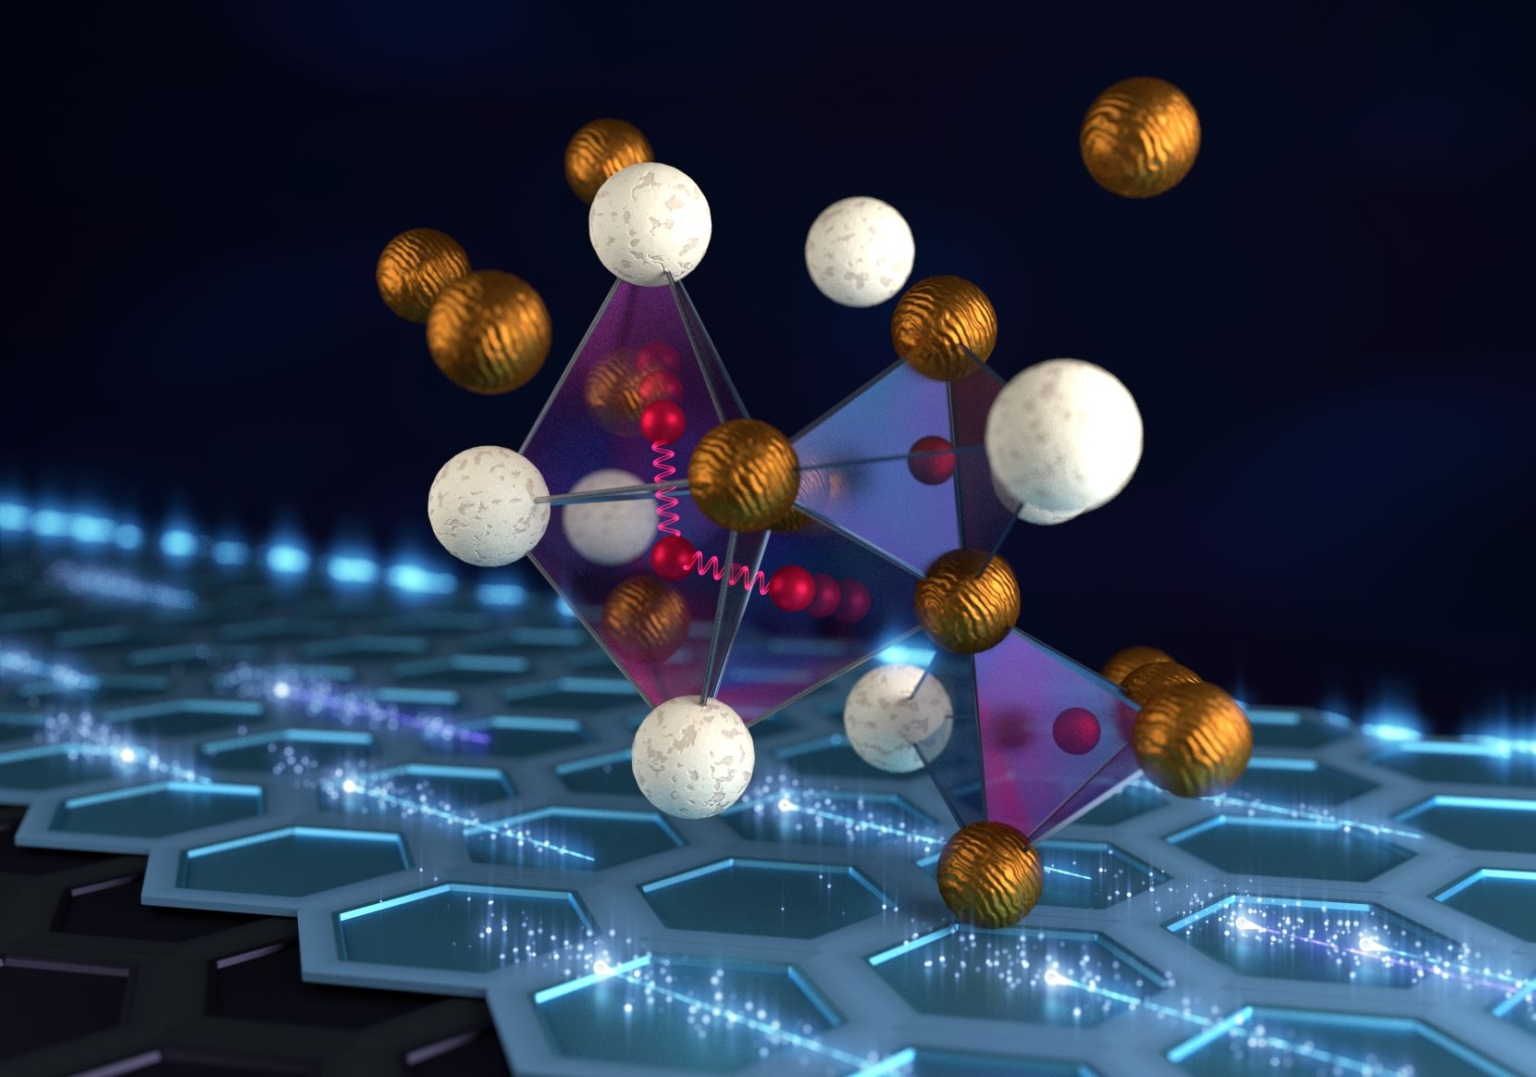 Représentation d'une structure atomique d'hydrure de zirconium et de vanadium: le réseau est composé d'atomes de vanadium (en bleu) et d'atomes de zirconium (en vert) entourant des atomes d'hydrogène (en rouge).